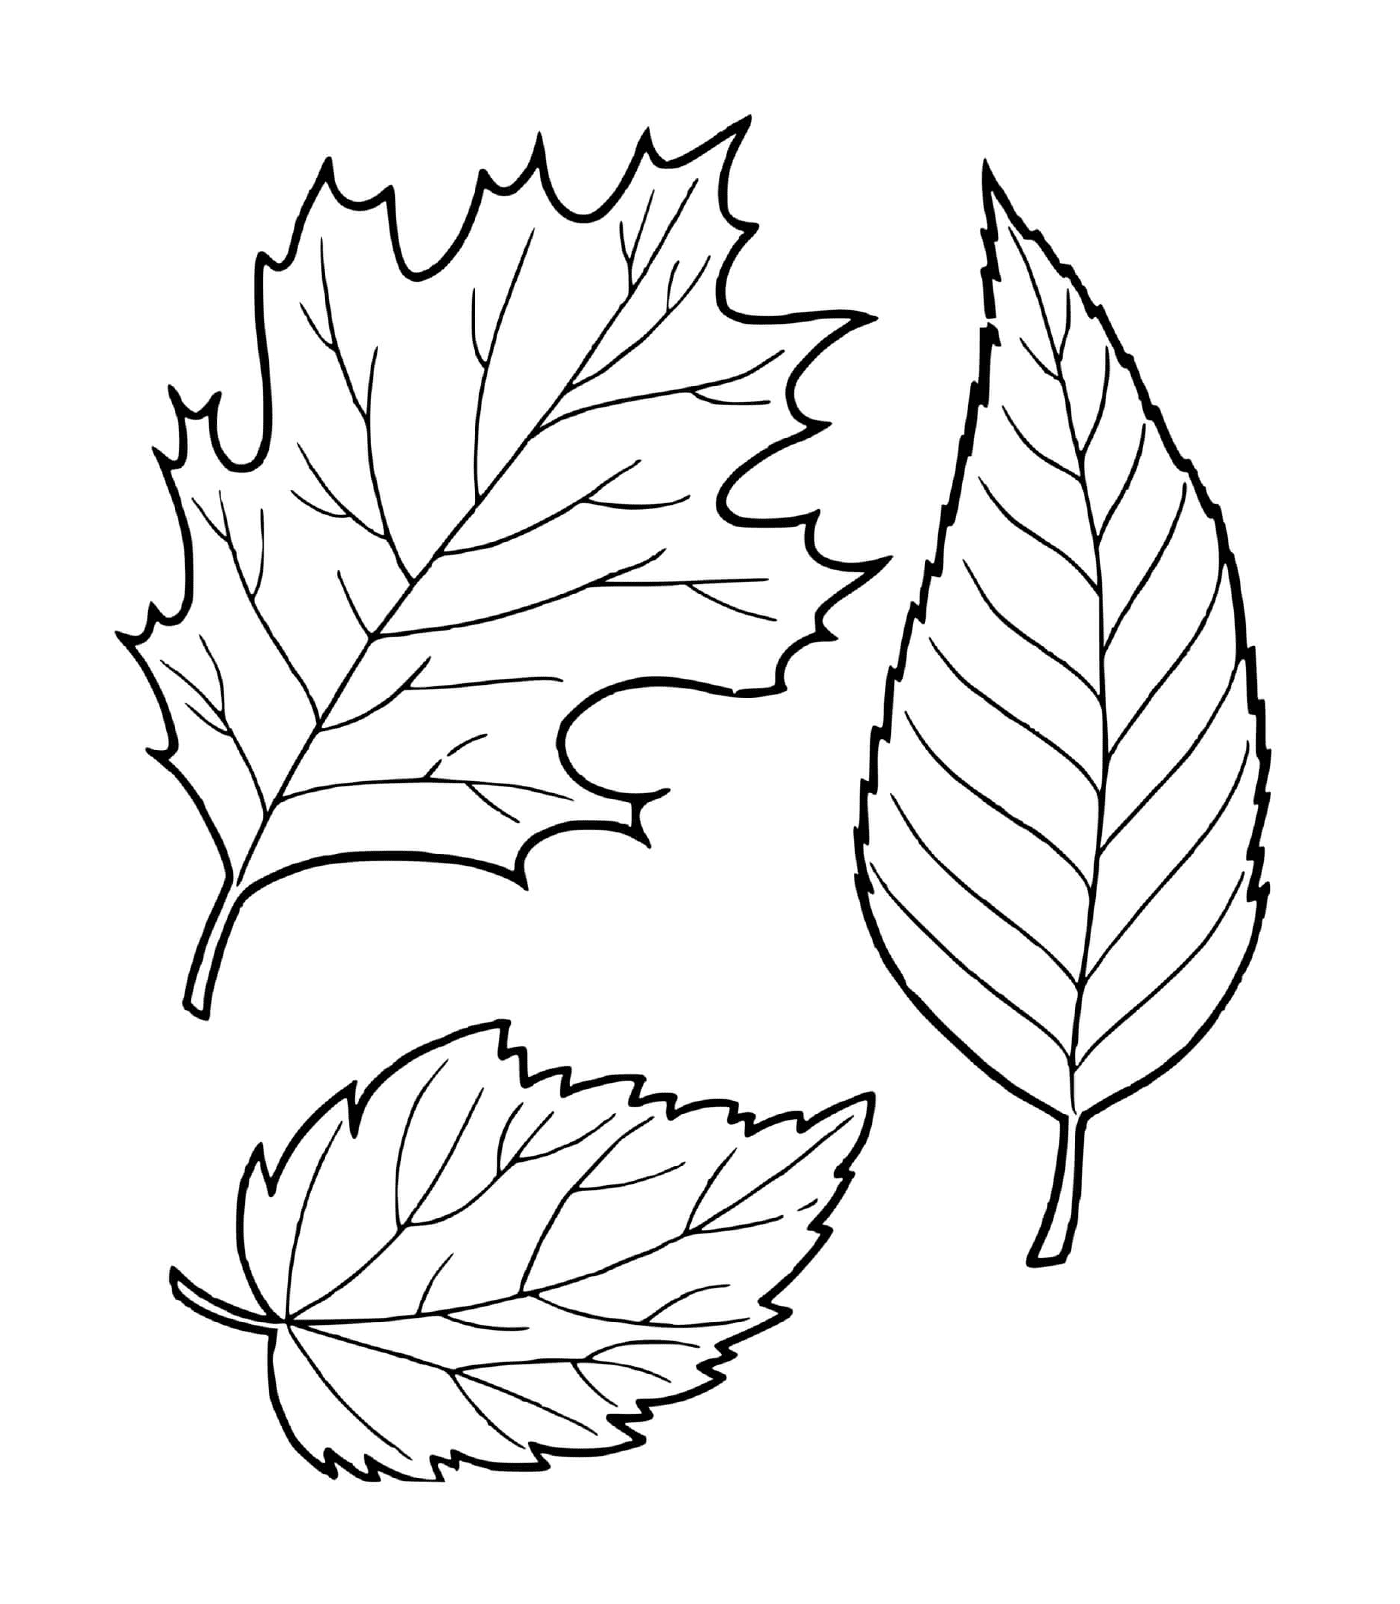   Trois feuilles d'automne dessinées 